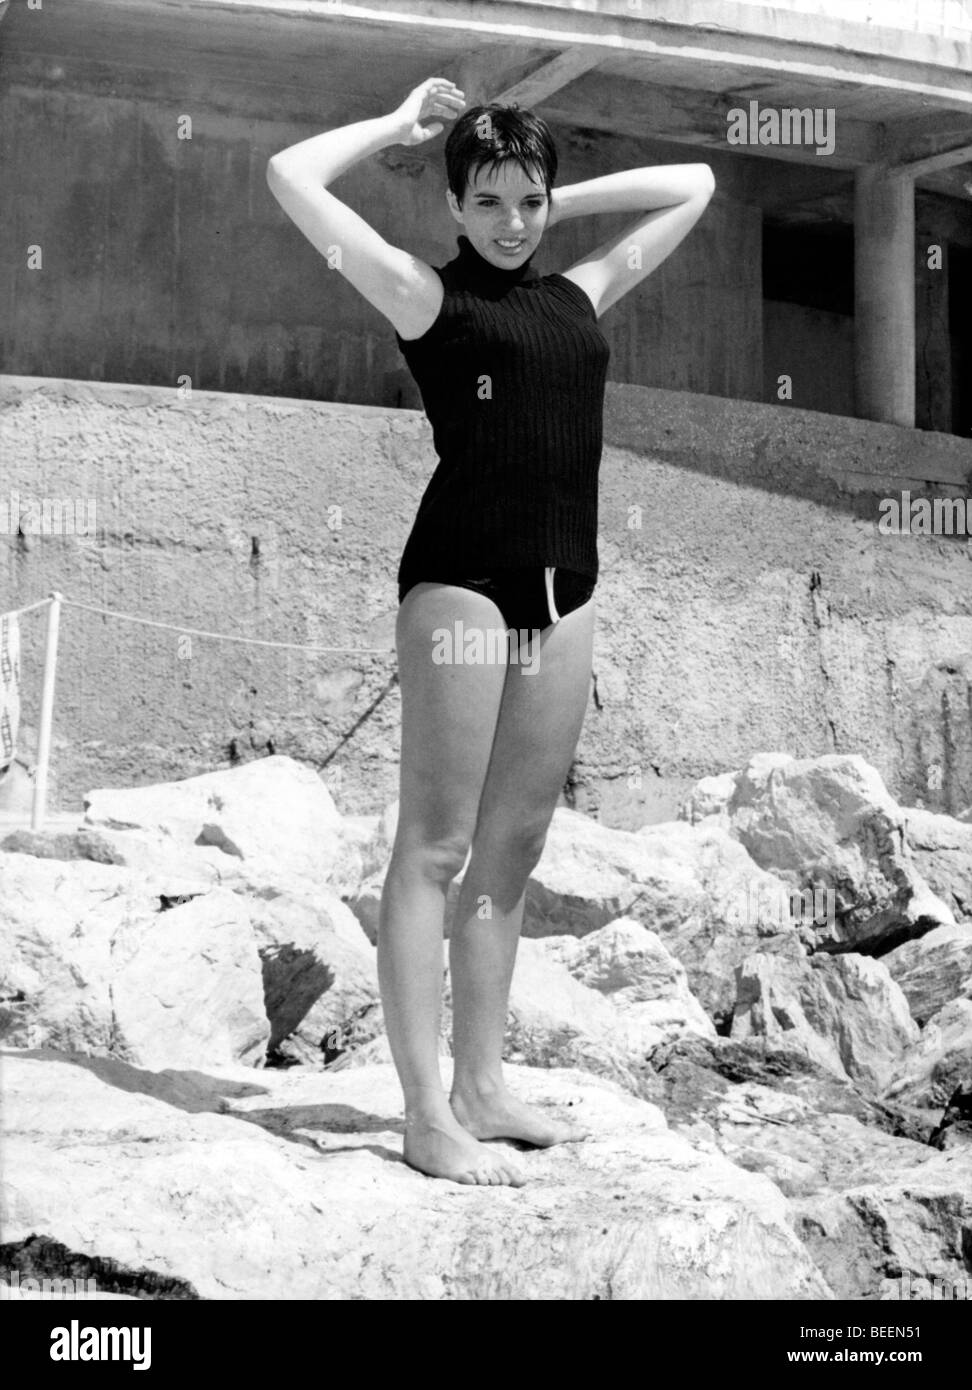 5556541 (900326) Liza Minnelli, amerikanische S‰ngerin und Schauspielerin, im Badeanzu am Strand von Monte Carlo, undatiert ca. Foto Stock